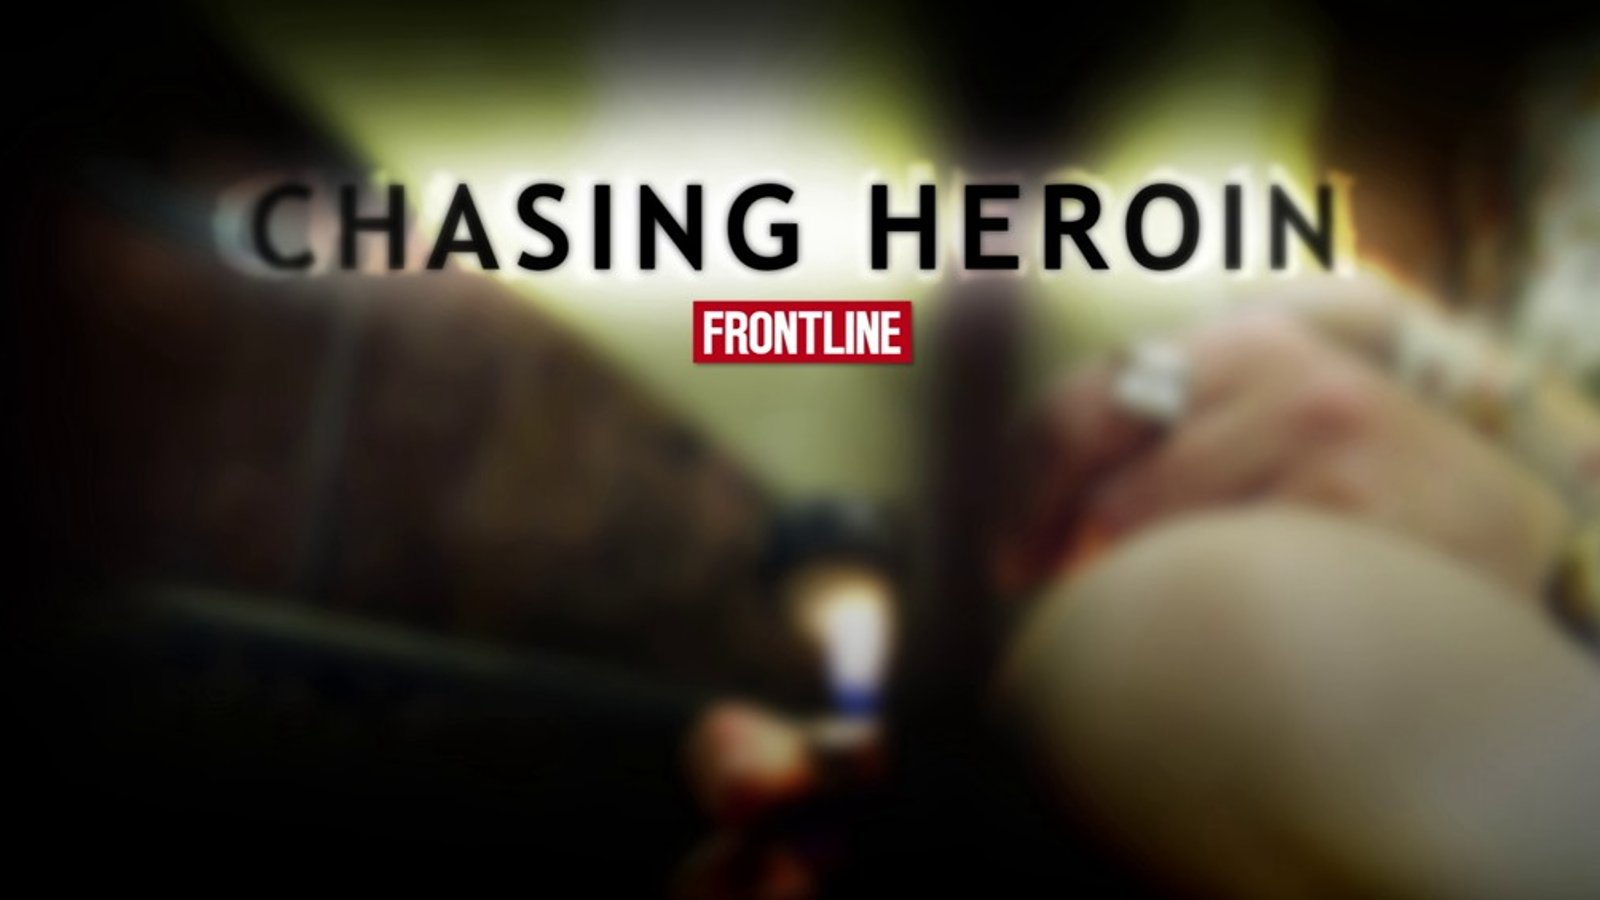 Chasing Heroin